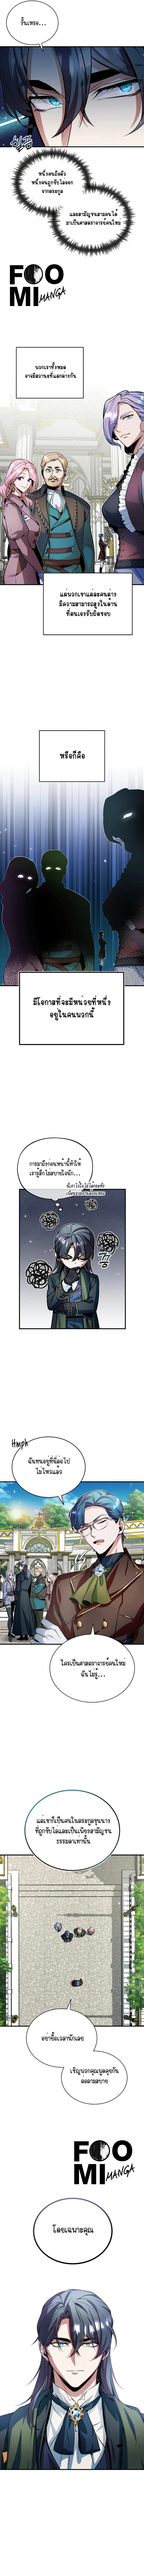 Academy’s Undercover Professor 6 (2)